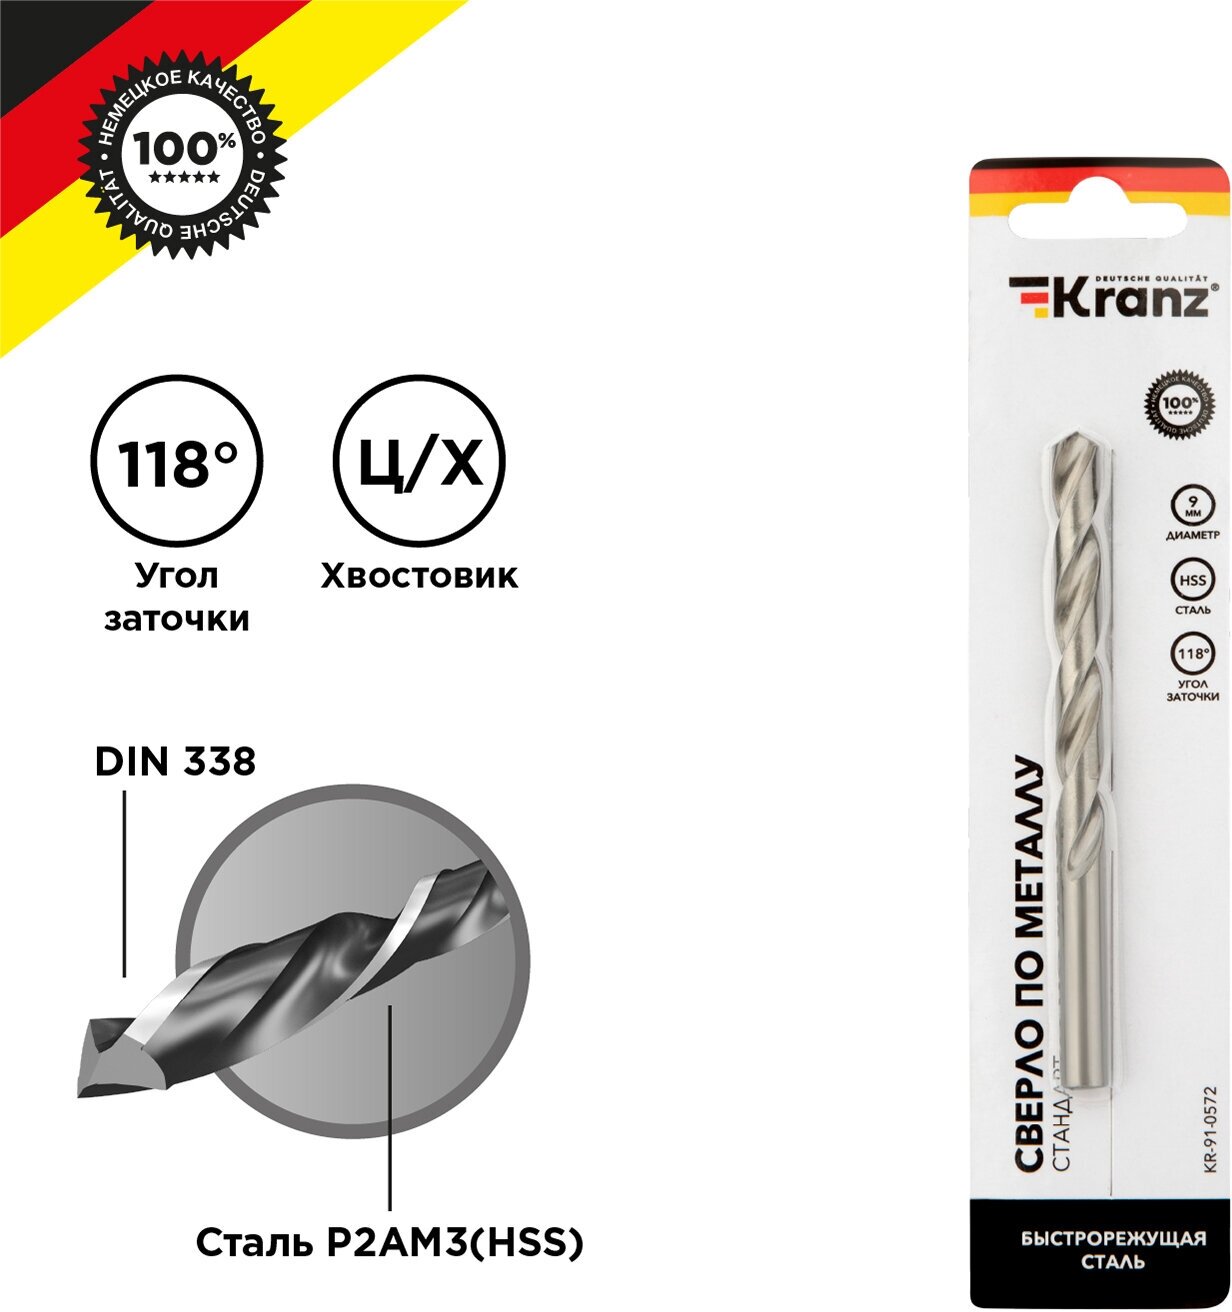 Сверло KRANZ по металлу 90 мм повышенной прочности с углом заточки 118 градусов HSS 1 шт. в упаковке DIN 338